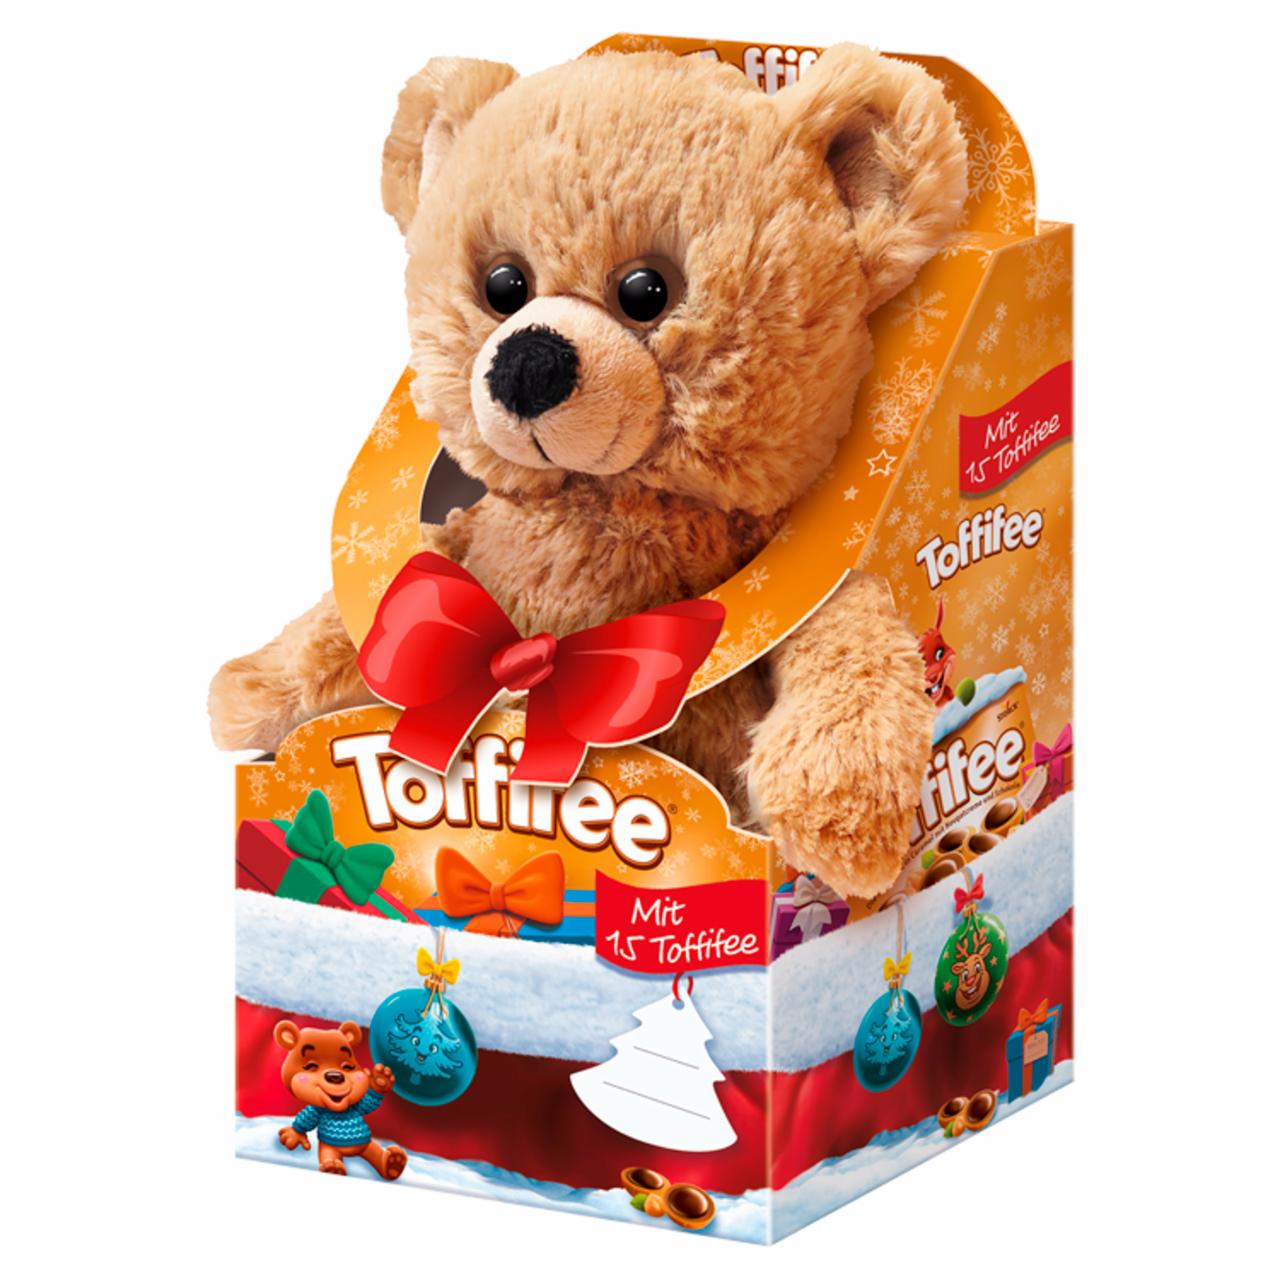 Képek - Toffifee mogyoró karamellben, mogyorós nugátkrémmel és csokoládéval, plüss figurával 125 g